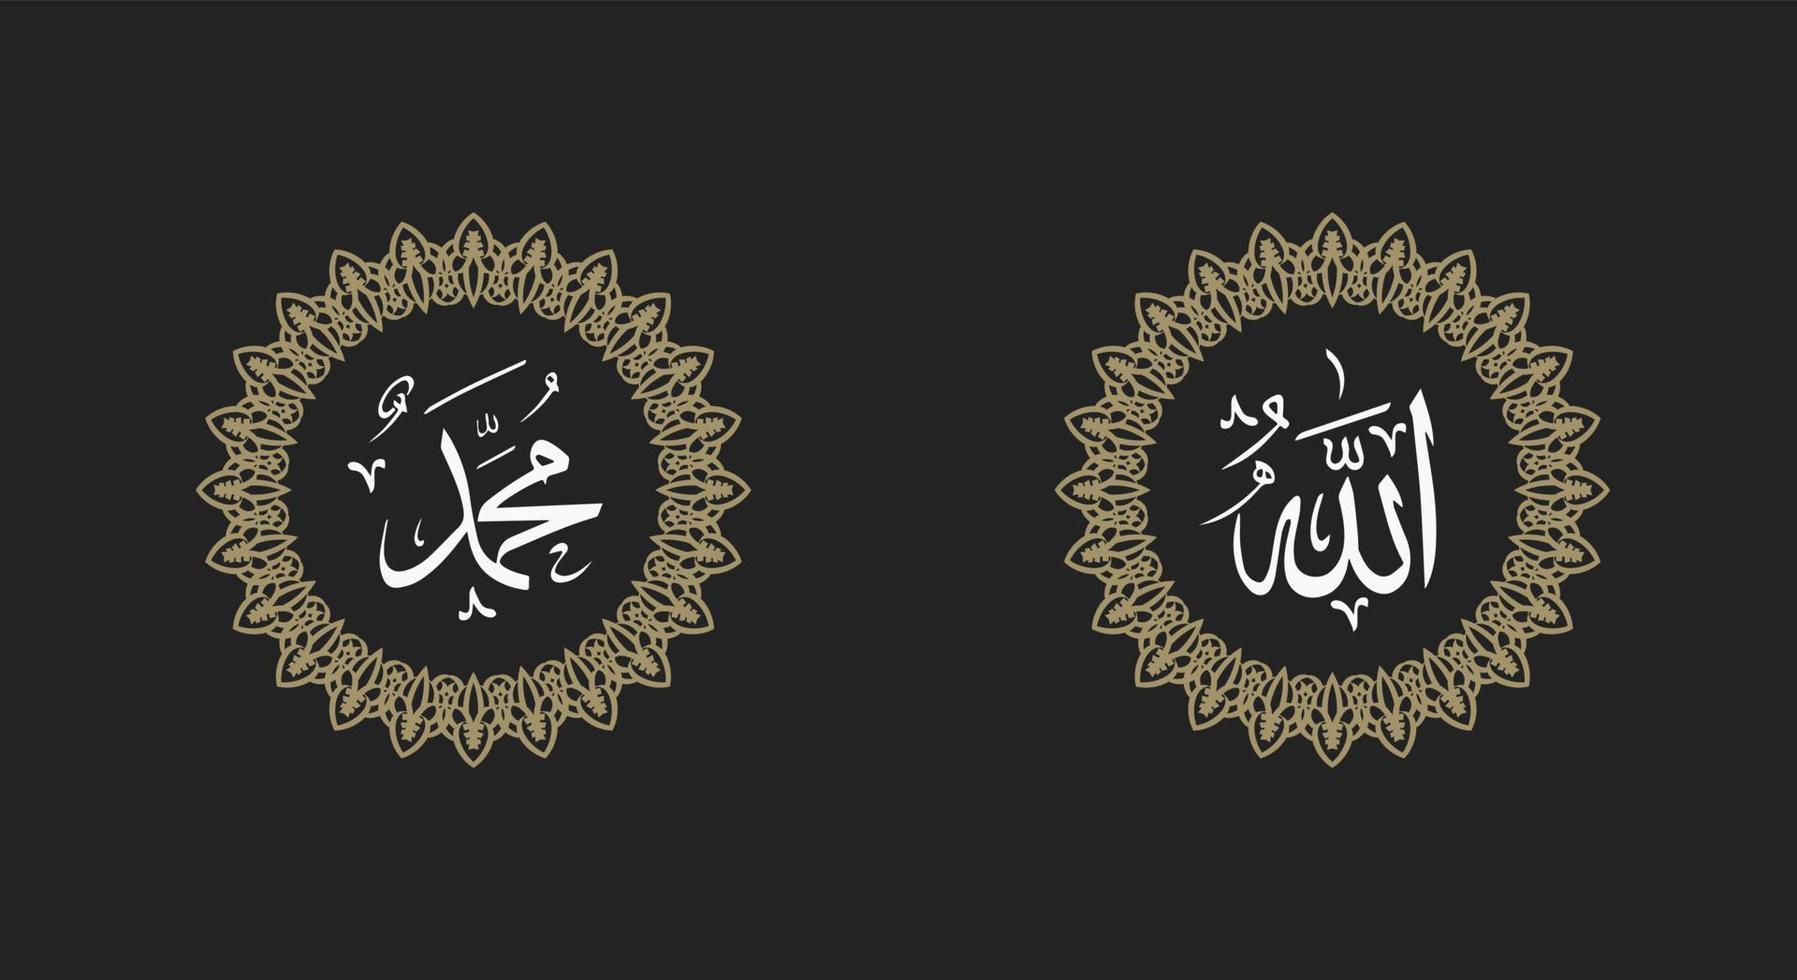 kalligrafi av allah och profeten Muhammed. prydnad på vit bakgrund med retro färg vektor